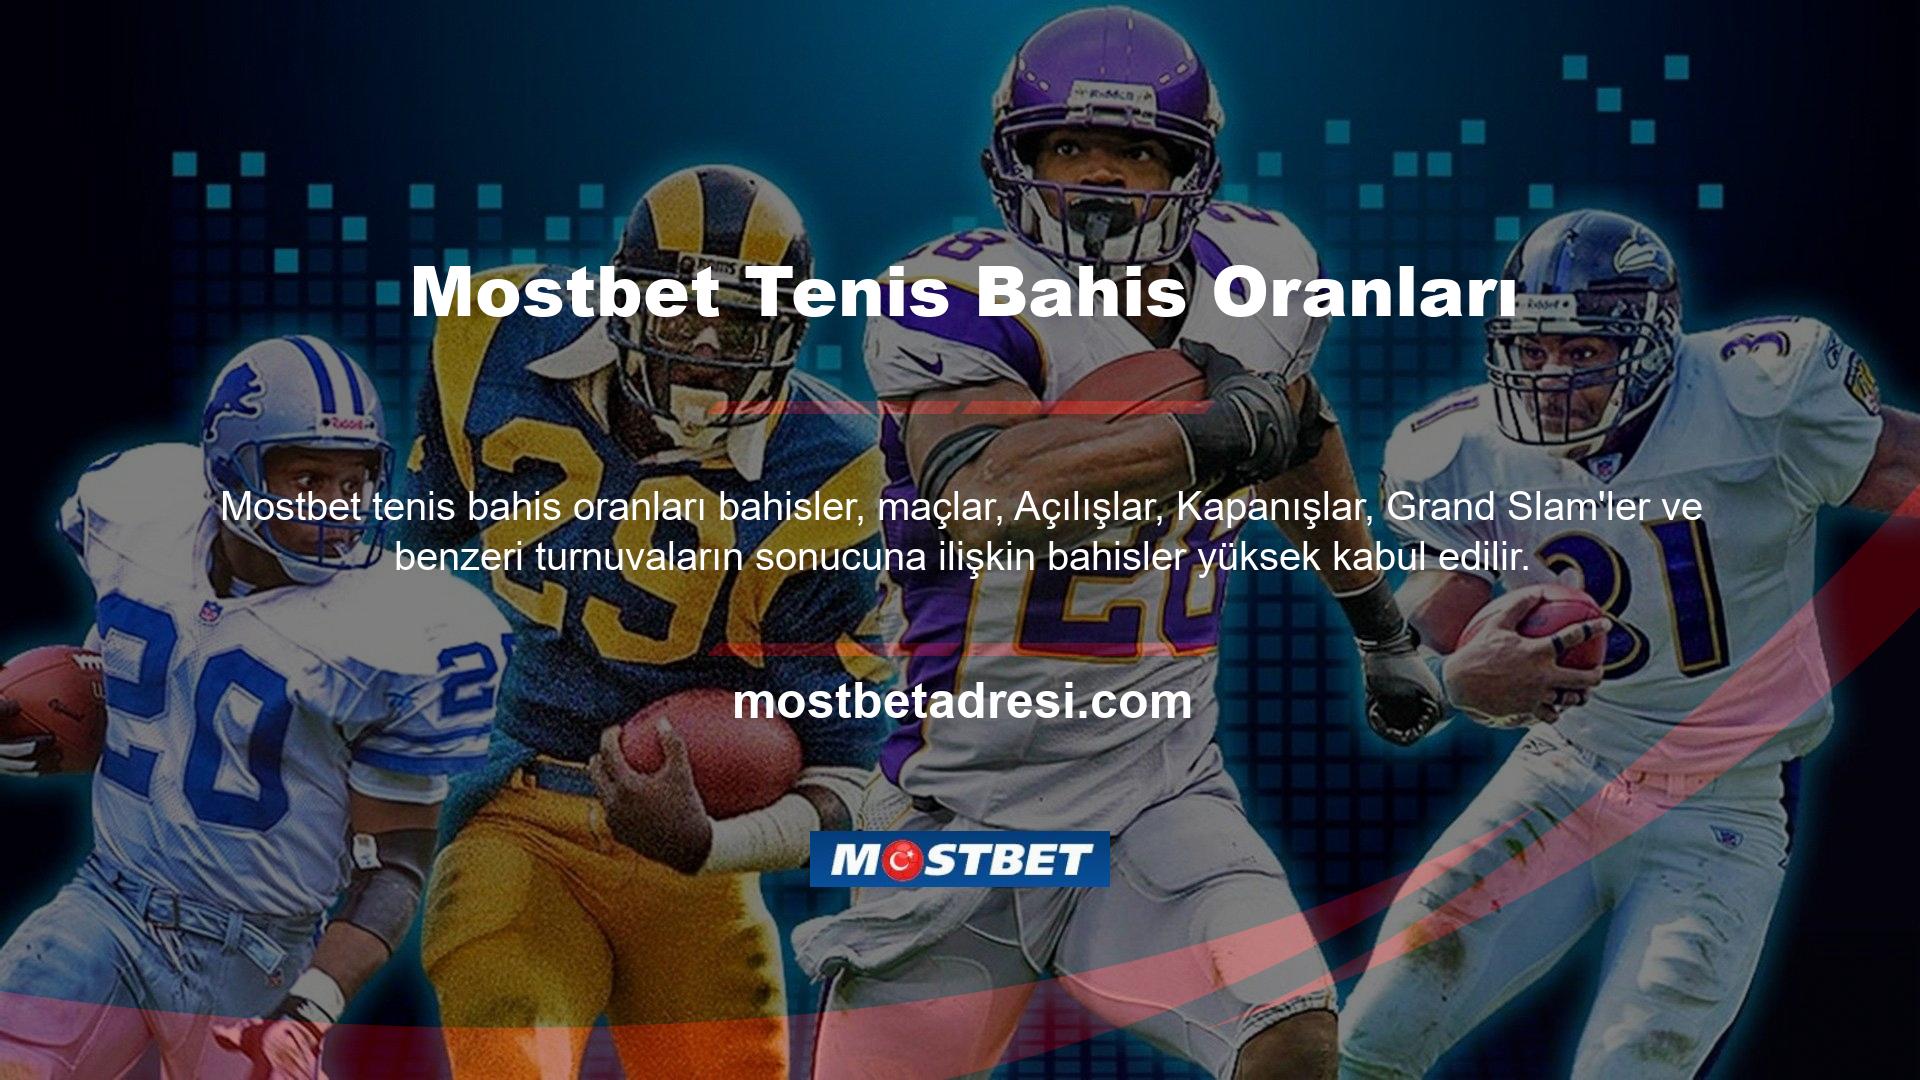 Bu kökene dayanarak, Mostbet spor olasılıkları teorisi revize edildi ve Mostbet yetenekli yönetim ekibi tarafından tüm Mostbet üyelerine tanıtıldı